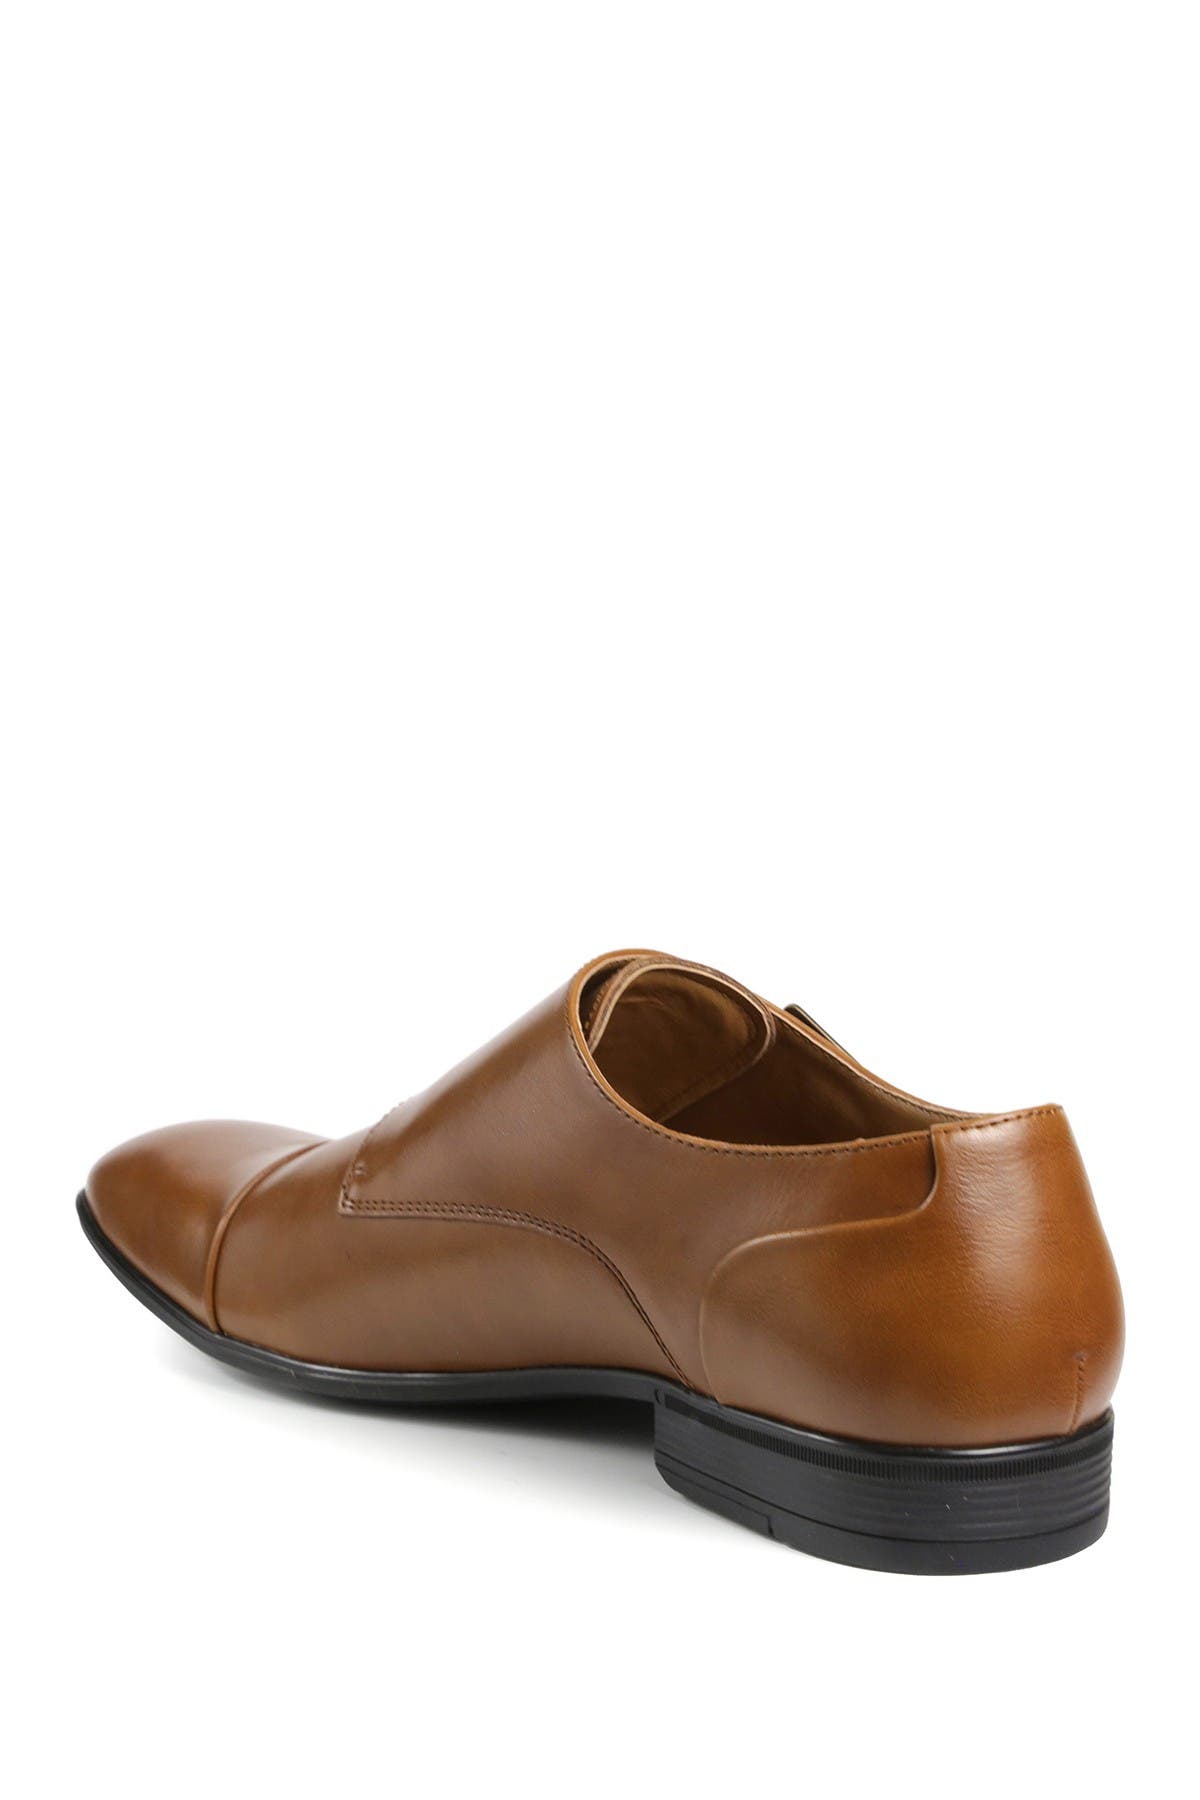 tahari men's dress shoes